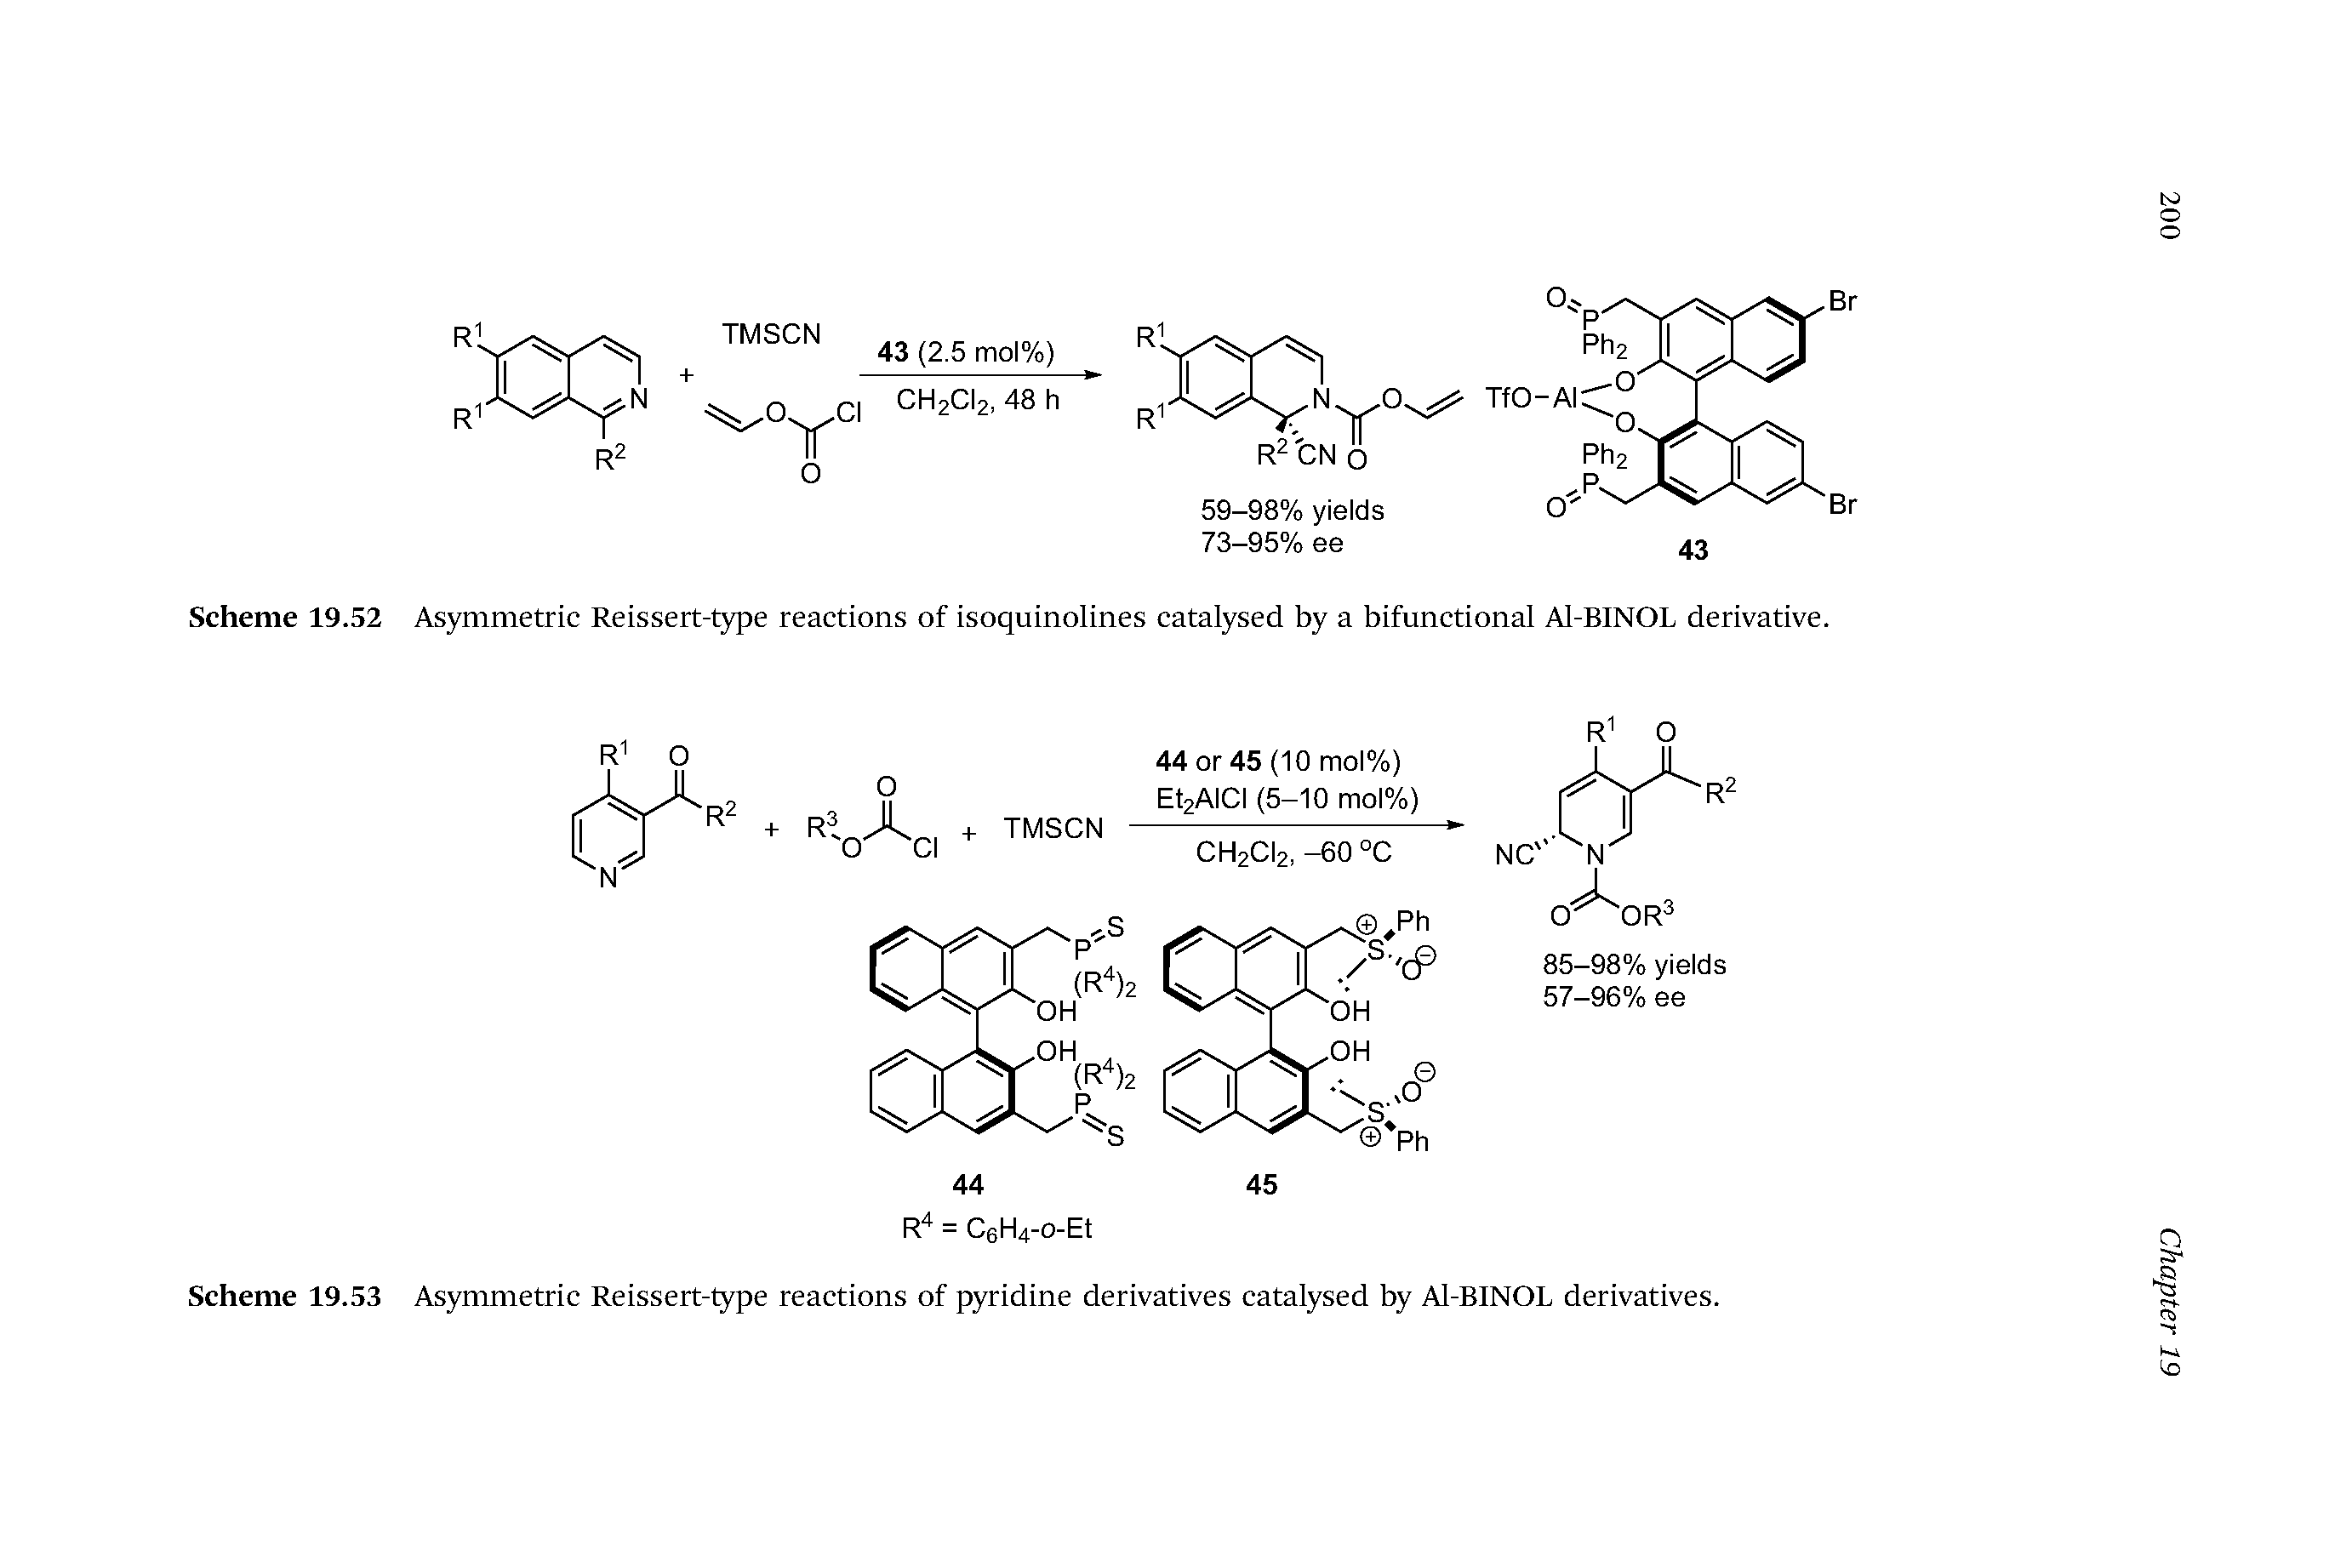 Scheme 19.53 Asymmetric Reissert-type reactions of pyridine derivatives catalysed by Al-BINOL derivatives.